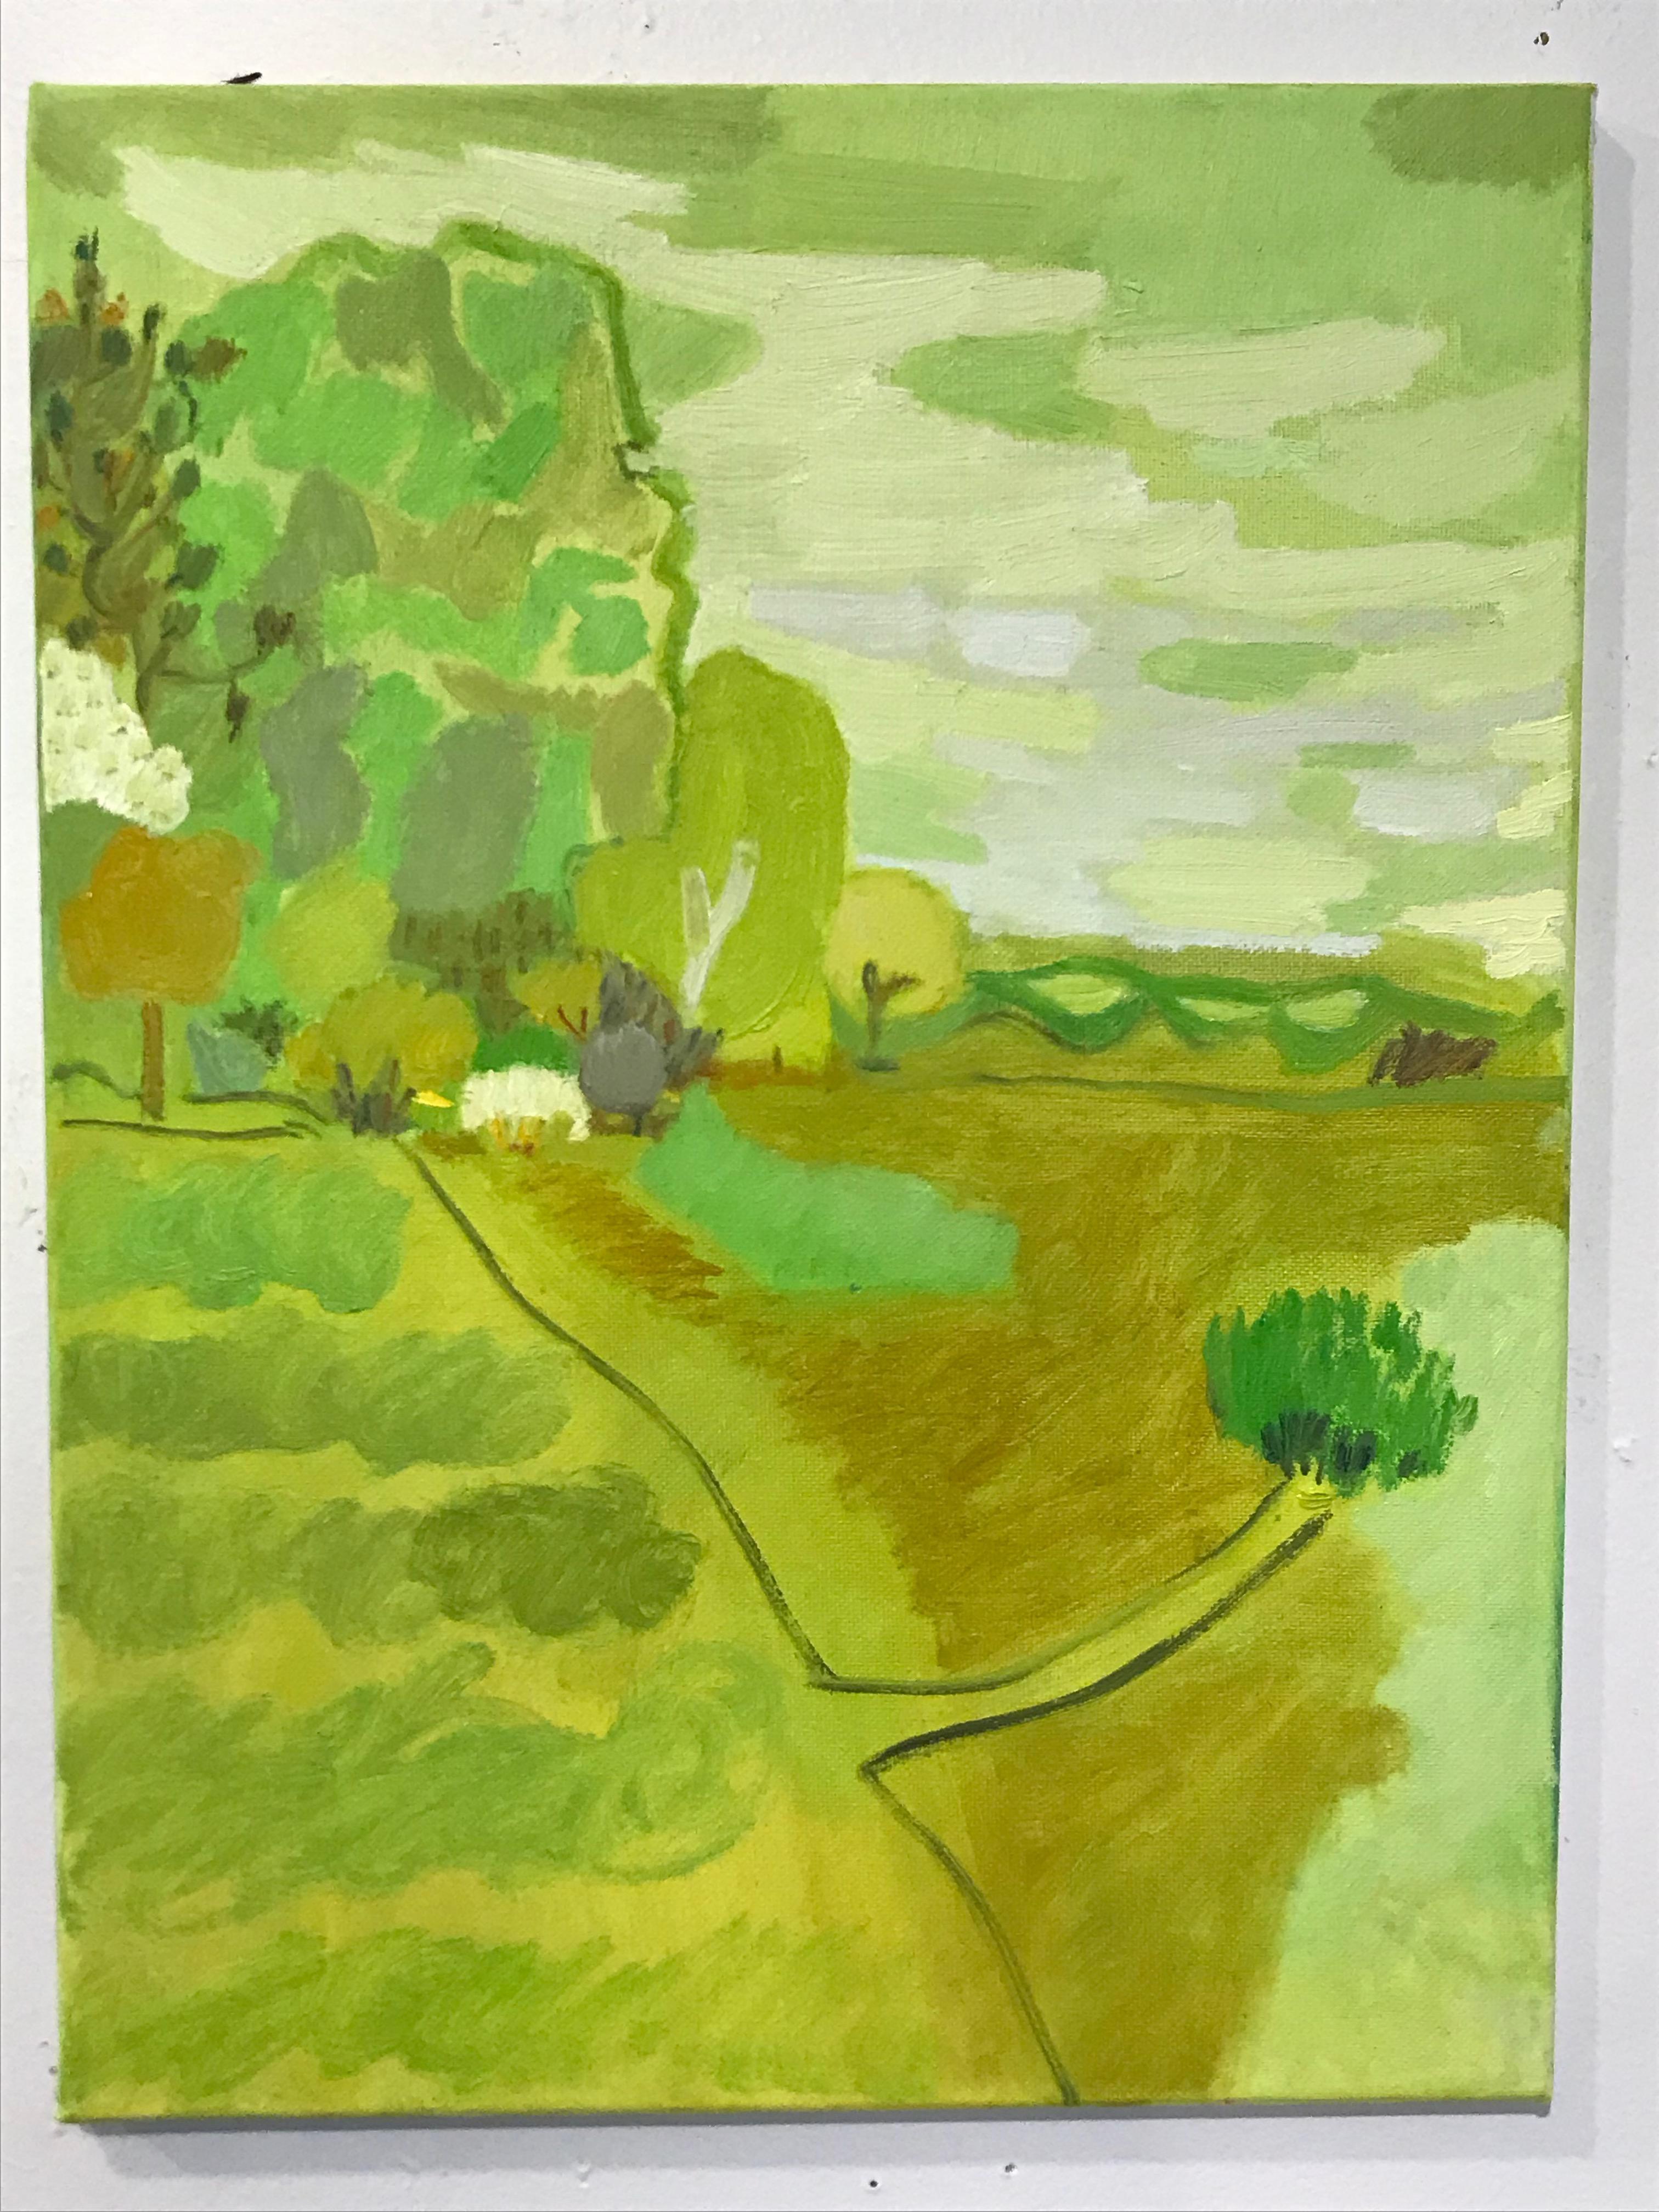 Landscape Painting Lisa Sanditz - Étude de couleur de paysage vert clair